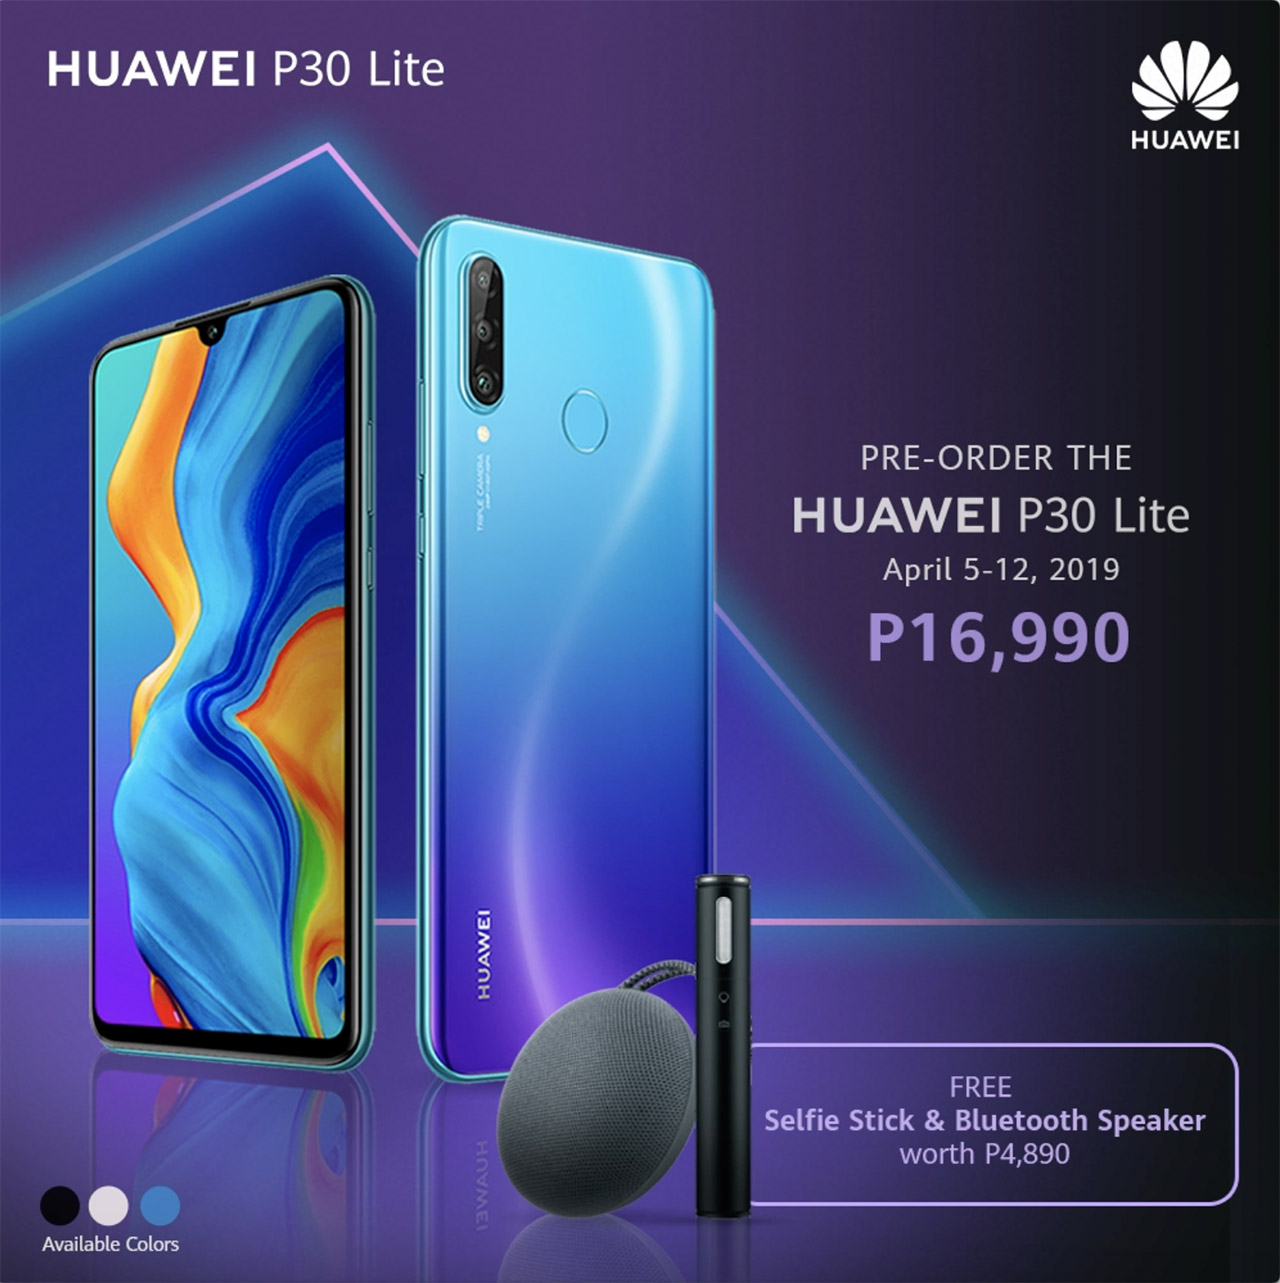 Huawei P30 Lite specs - PhoneArena